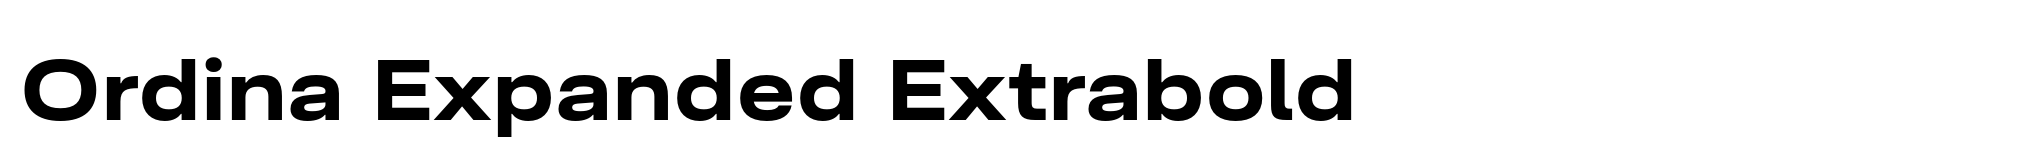 Ordina Expanded Extrabold image